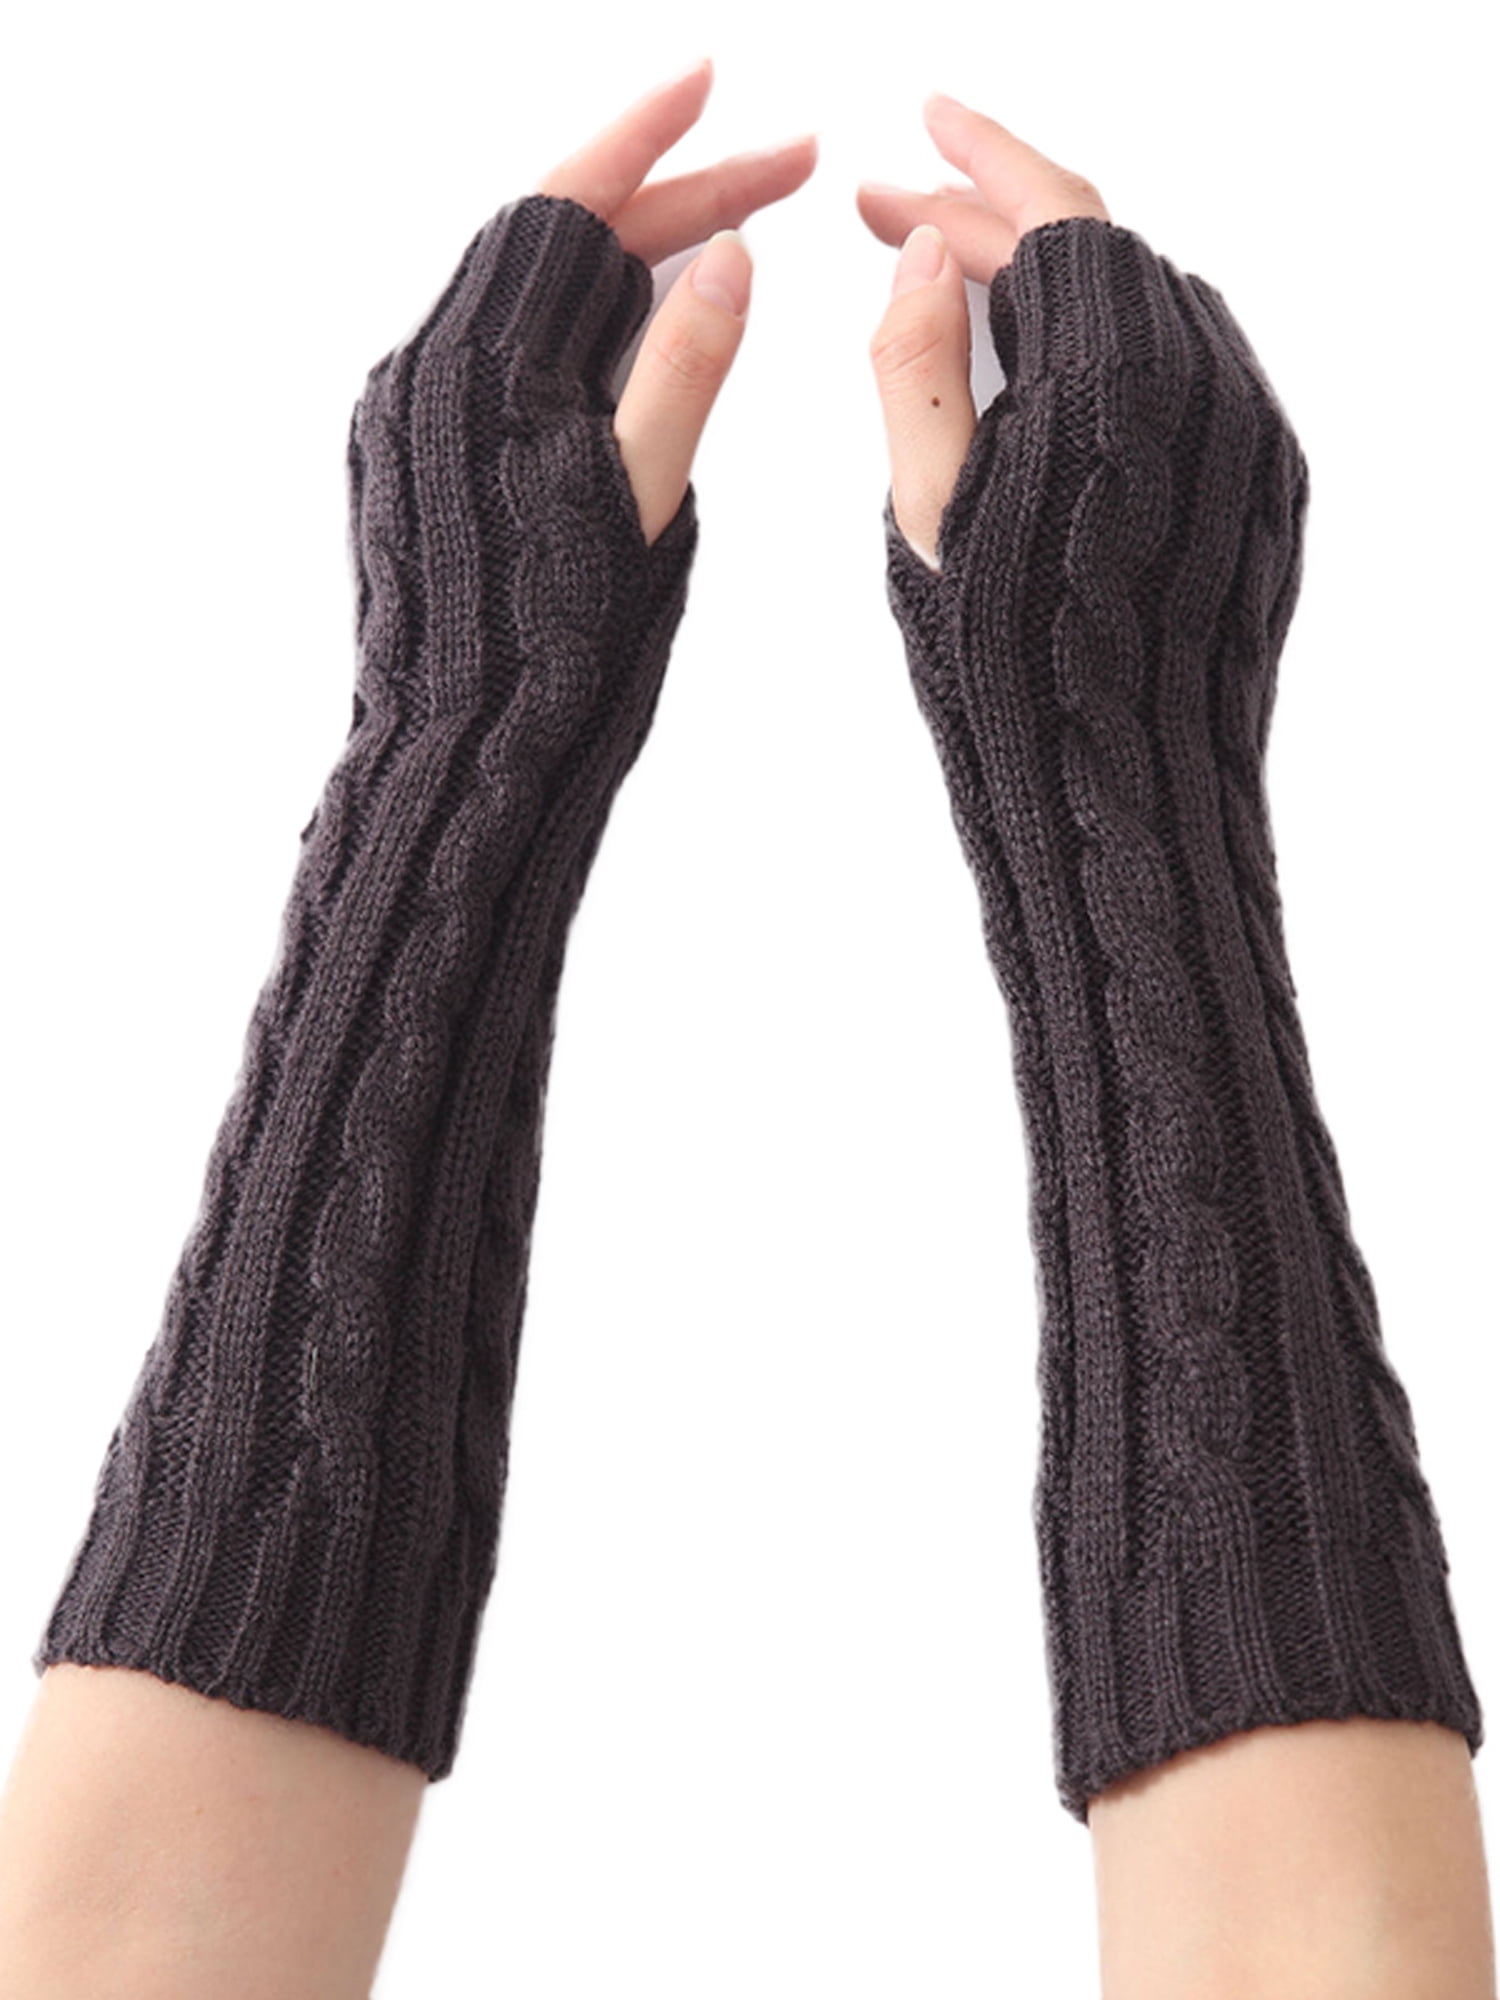 Hand Mitten Fingerless Gloves Knitted Warm Mittens Striped Glove Sleeve Gloves 